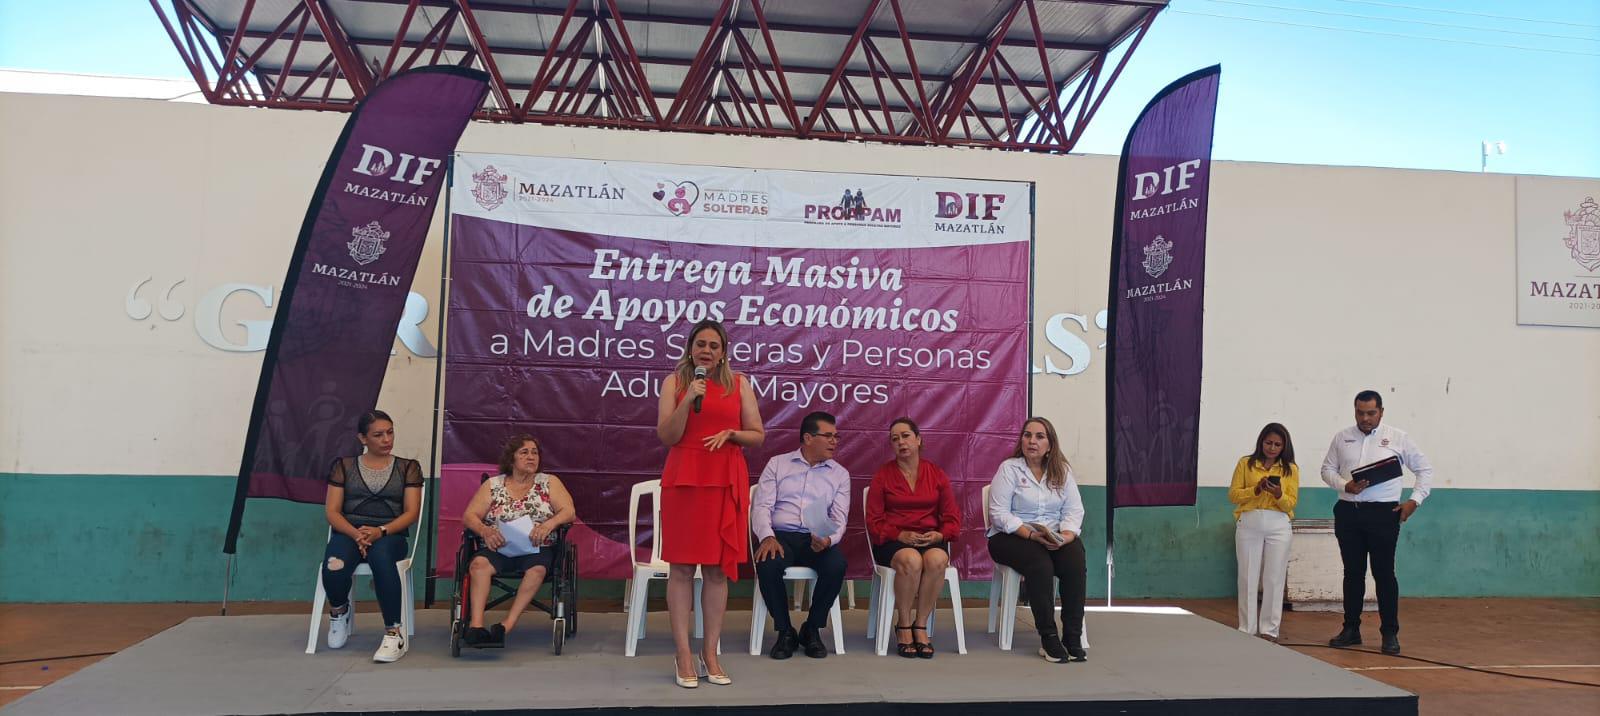 $!Reciben apoyo económico madres solteras y adultos mayores en Mazatlán